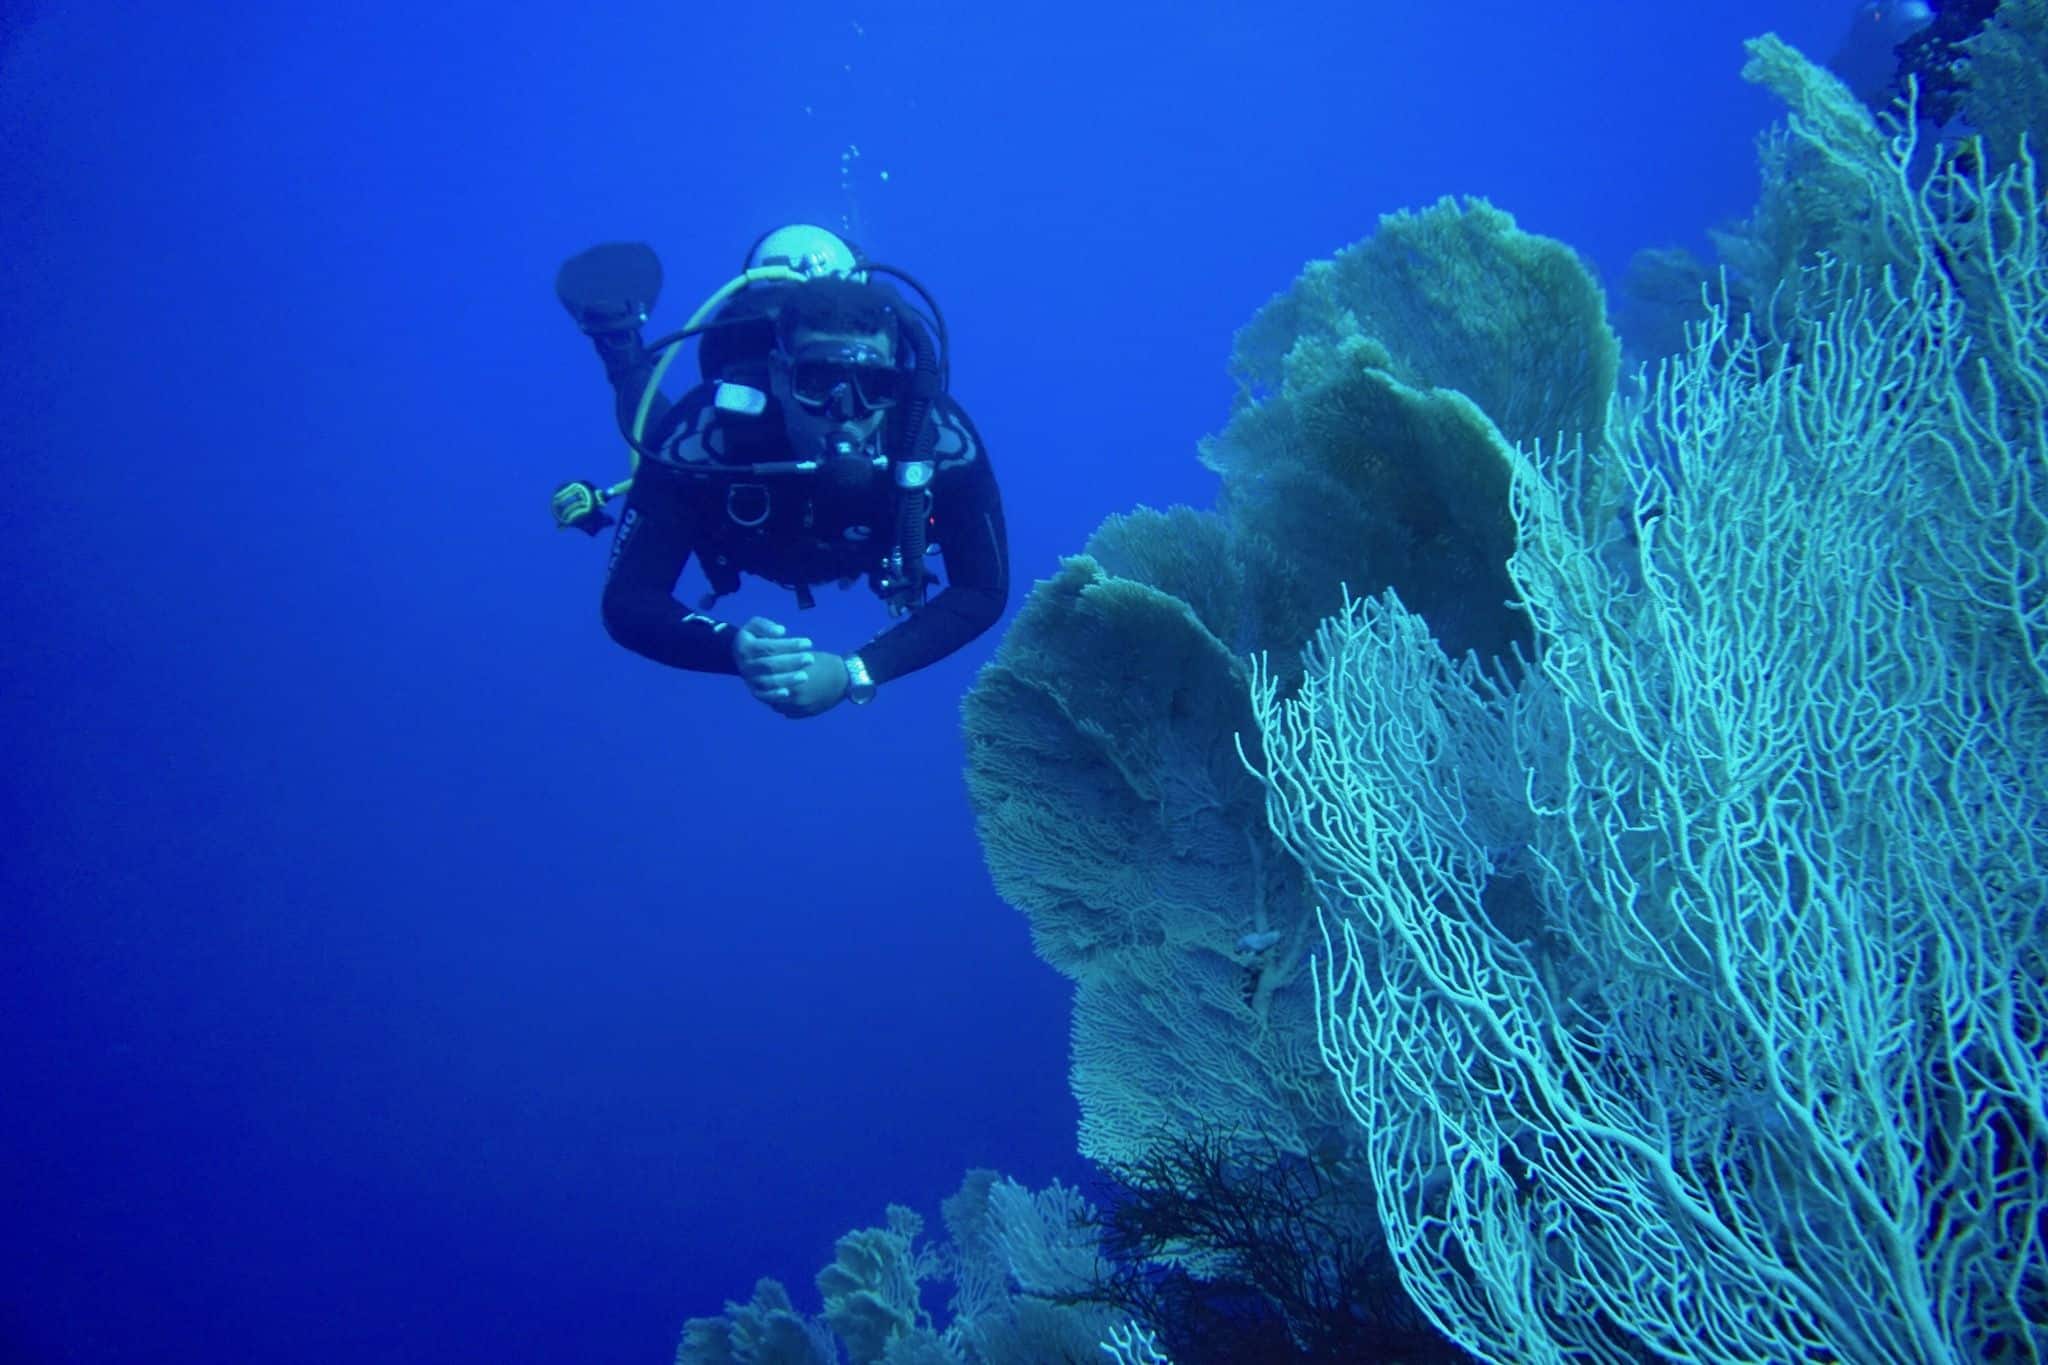 Plongée fascinante - vous pouvez découvrir un monde étrange sous la surface de la mer.